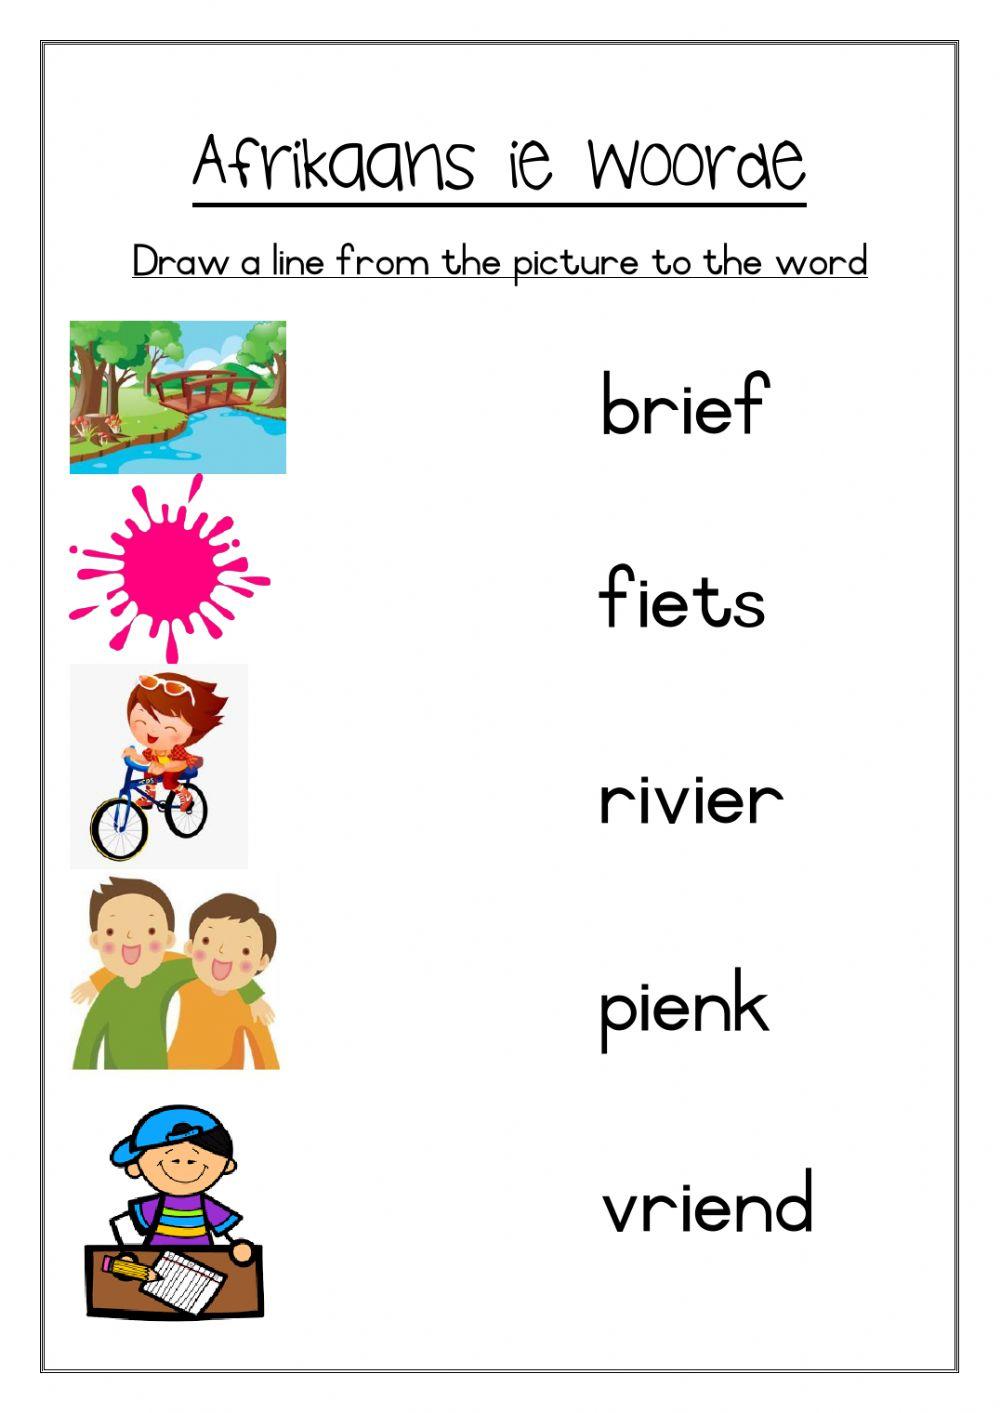 Afrikaans ie words worksheet 1